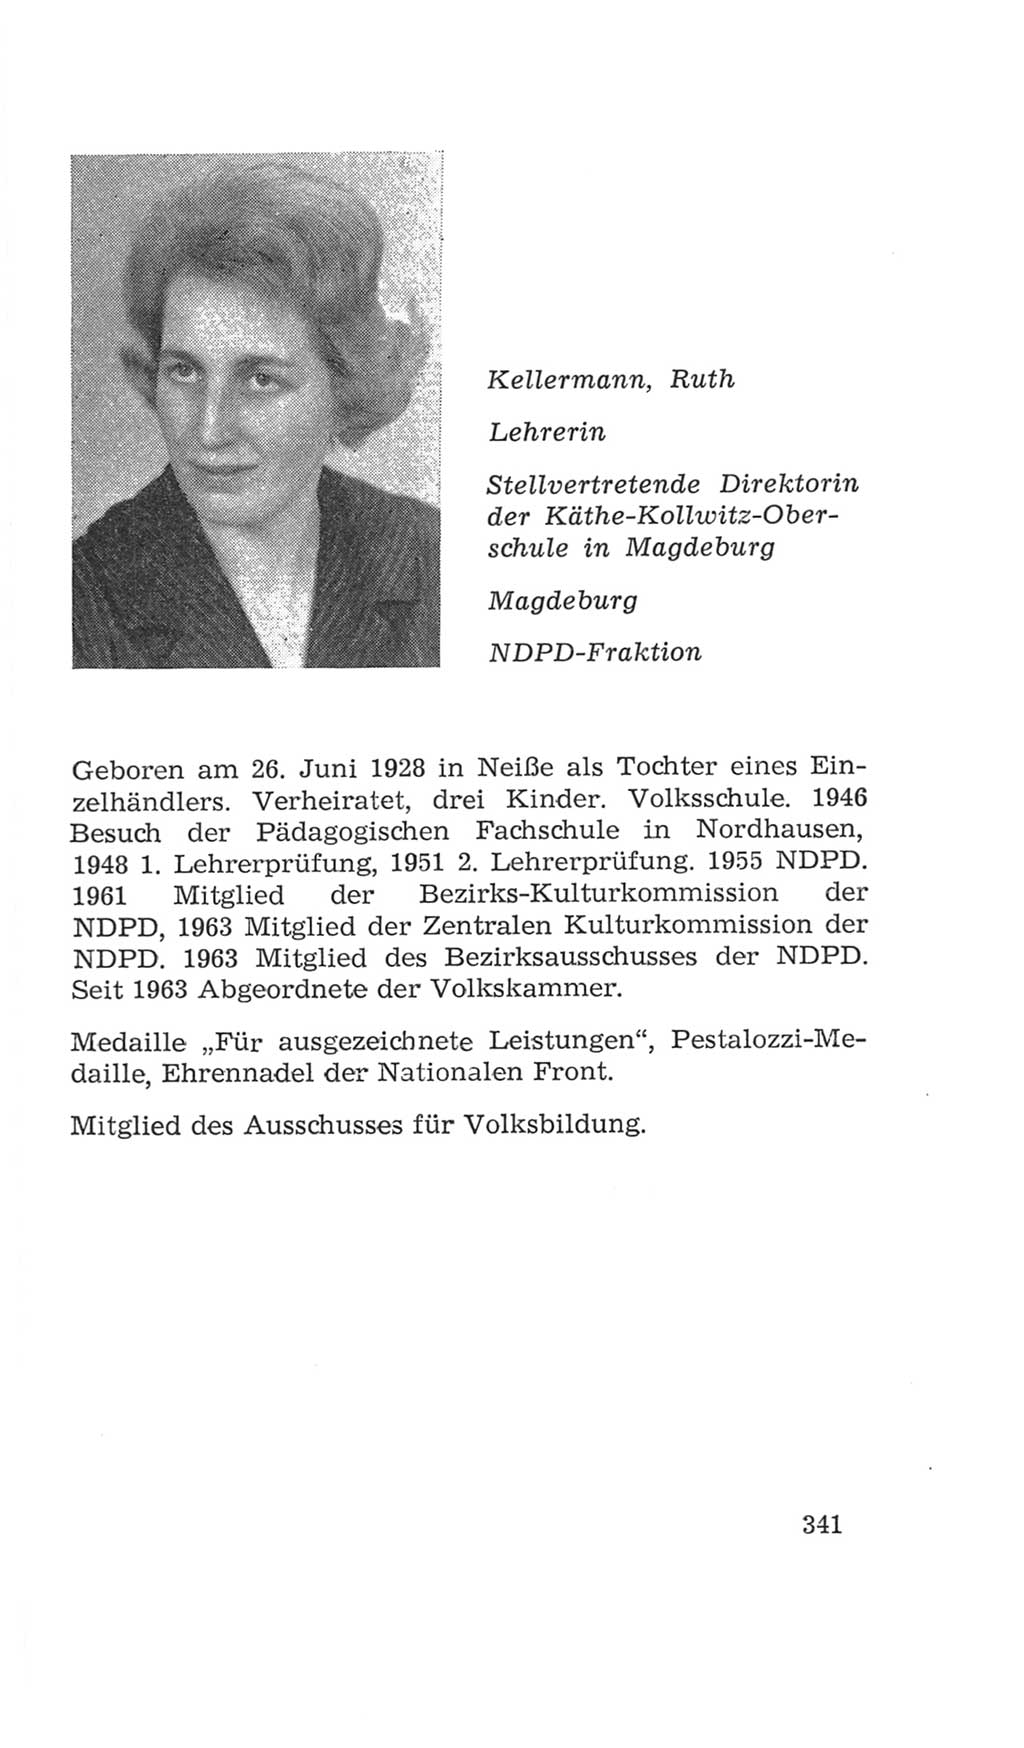 Volkskammer (VK) der Deutschen Demokratischen Republik (DDR), 4. Wahlperiode 1963-1967, Seite 341 (VK. DDR 4. WP. 1963-1967, S. 341)